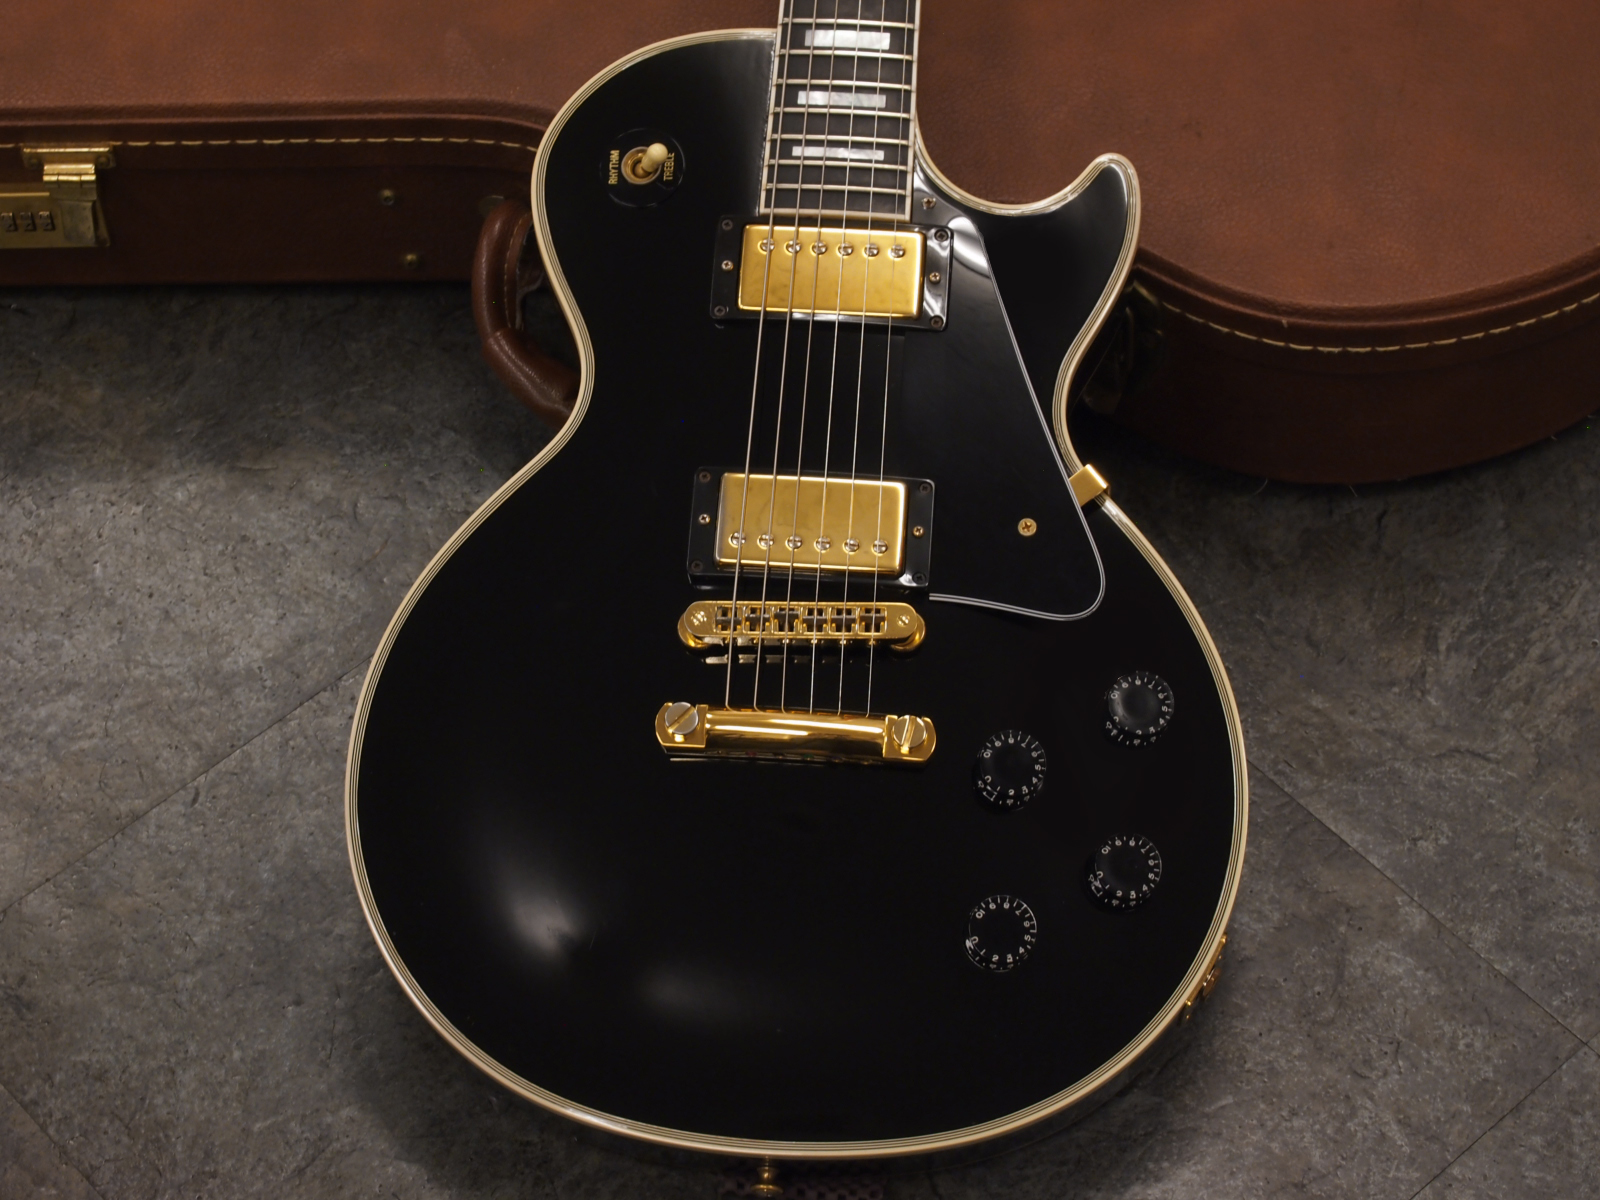 Gibson Les Paul Custom Ebony 1998年製 税込販売価格 258 000 中古 状態の良いレスポール カスタム中古品が入荷しました 浜松の中古楽器の買取 販売 ギターとリペア 修理 の事ならソニックス